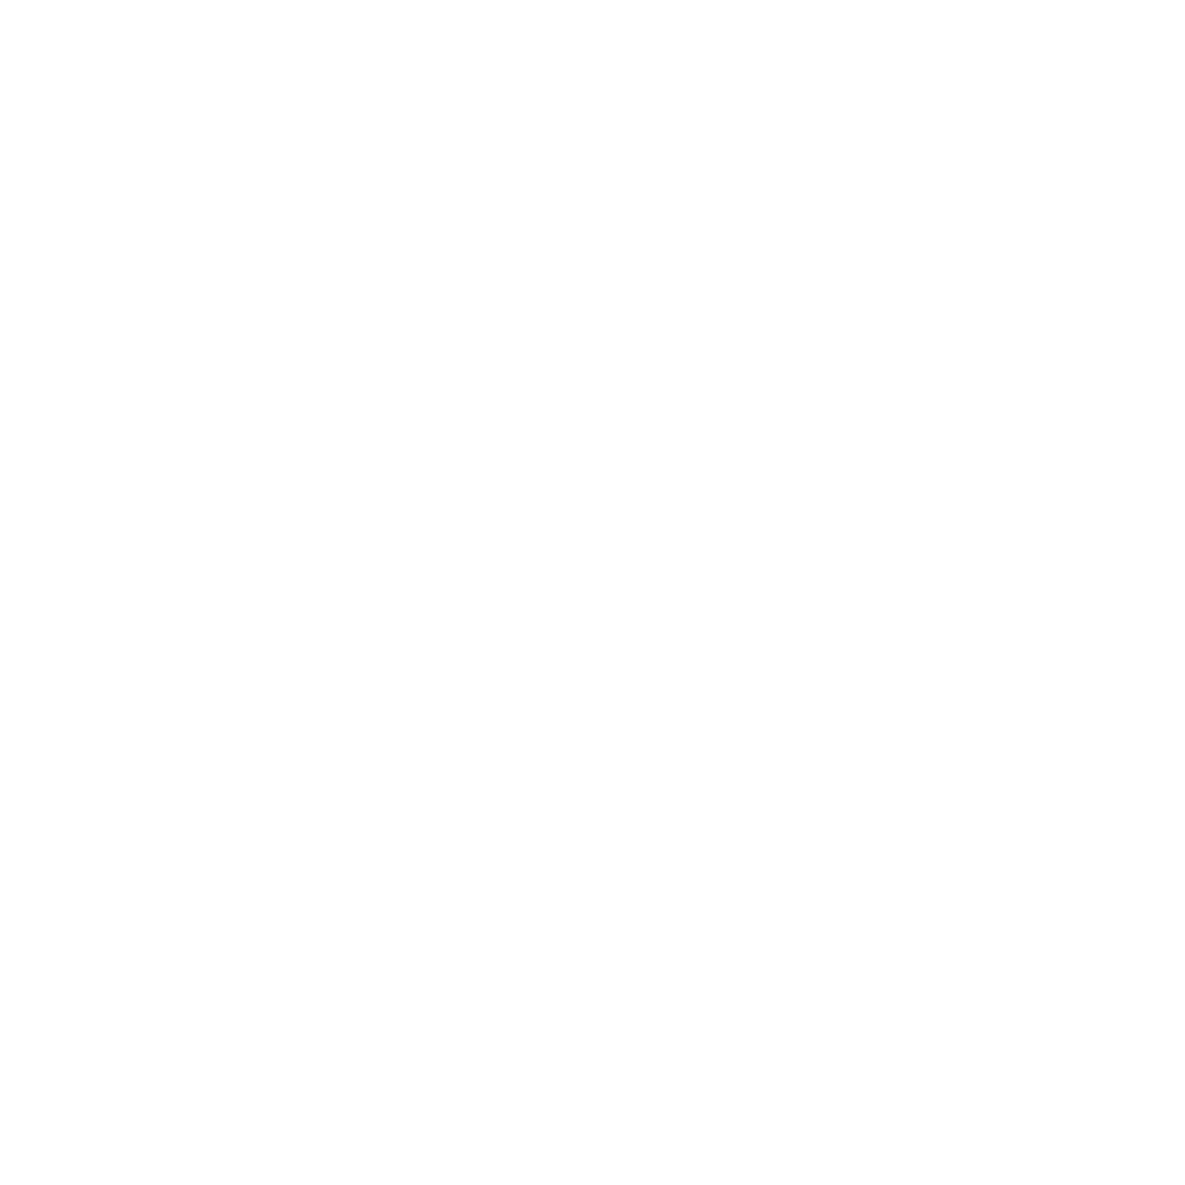 90+% processor utilization